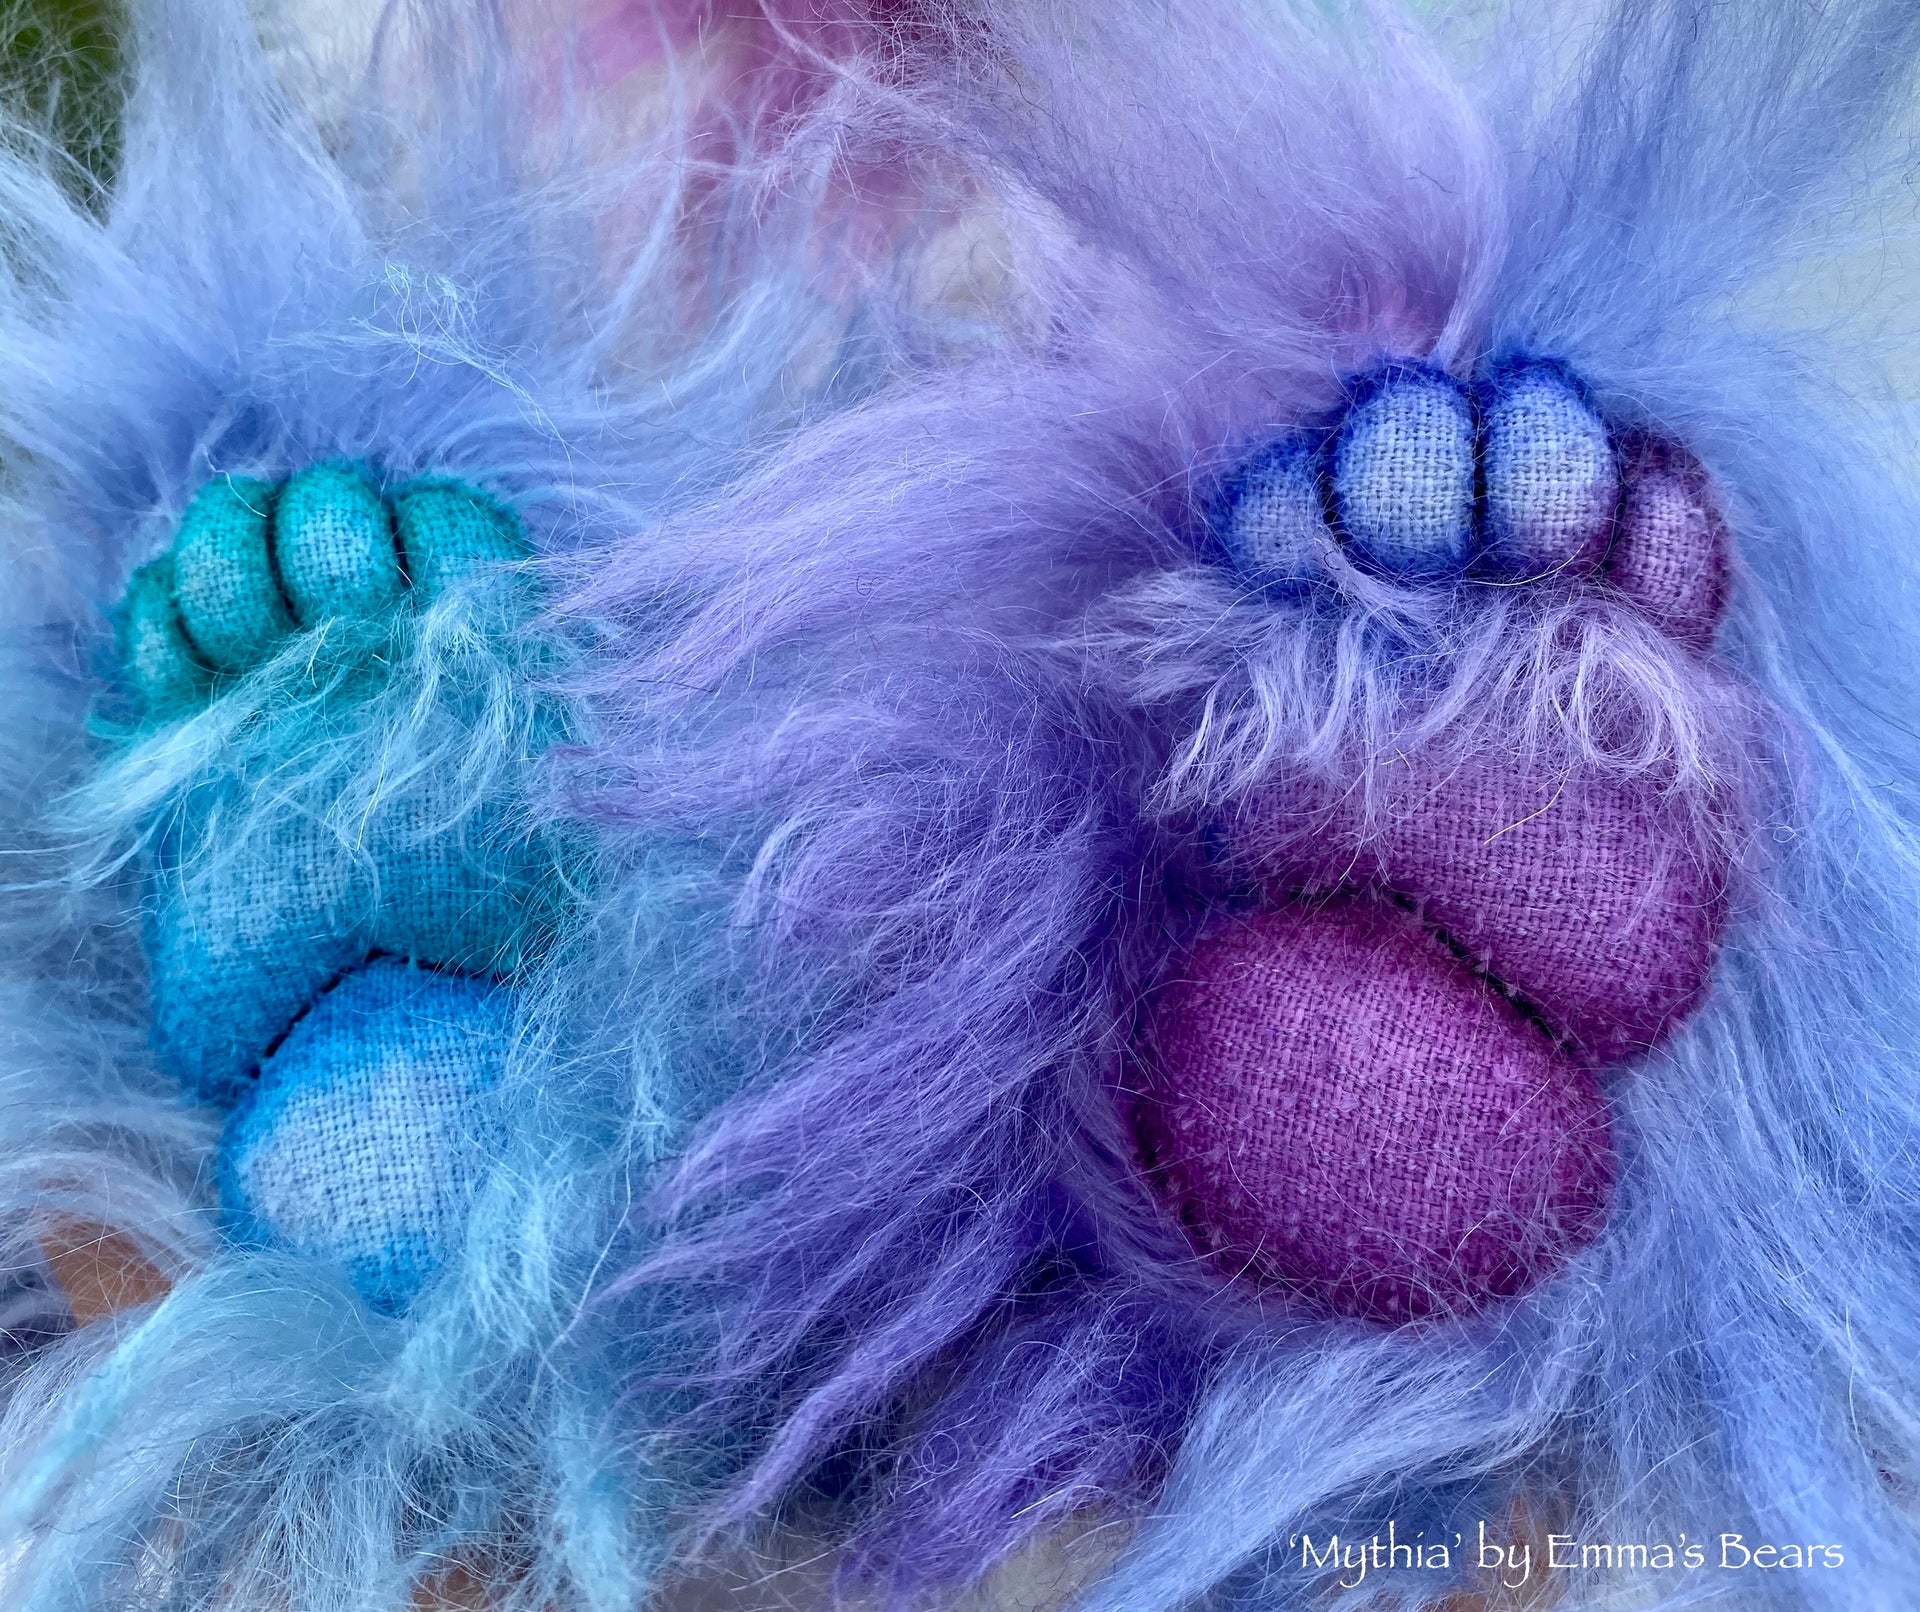 Mythia - 14IN hand dyed mohair bear by Emmas Bears - OOAK